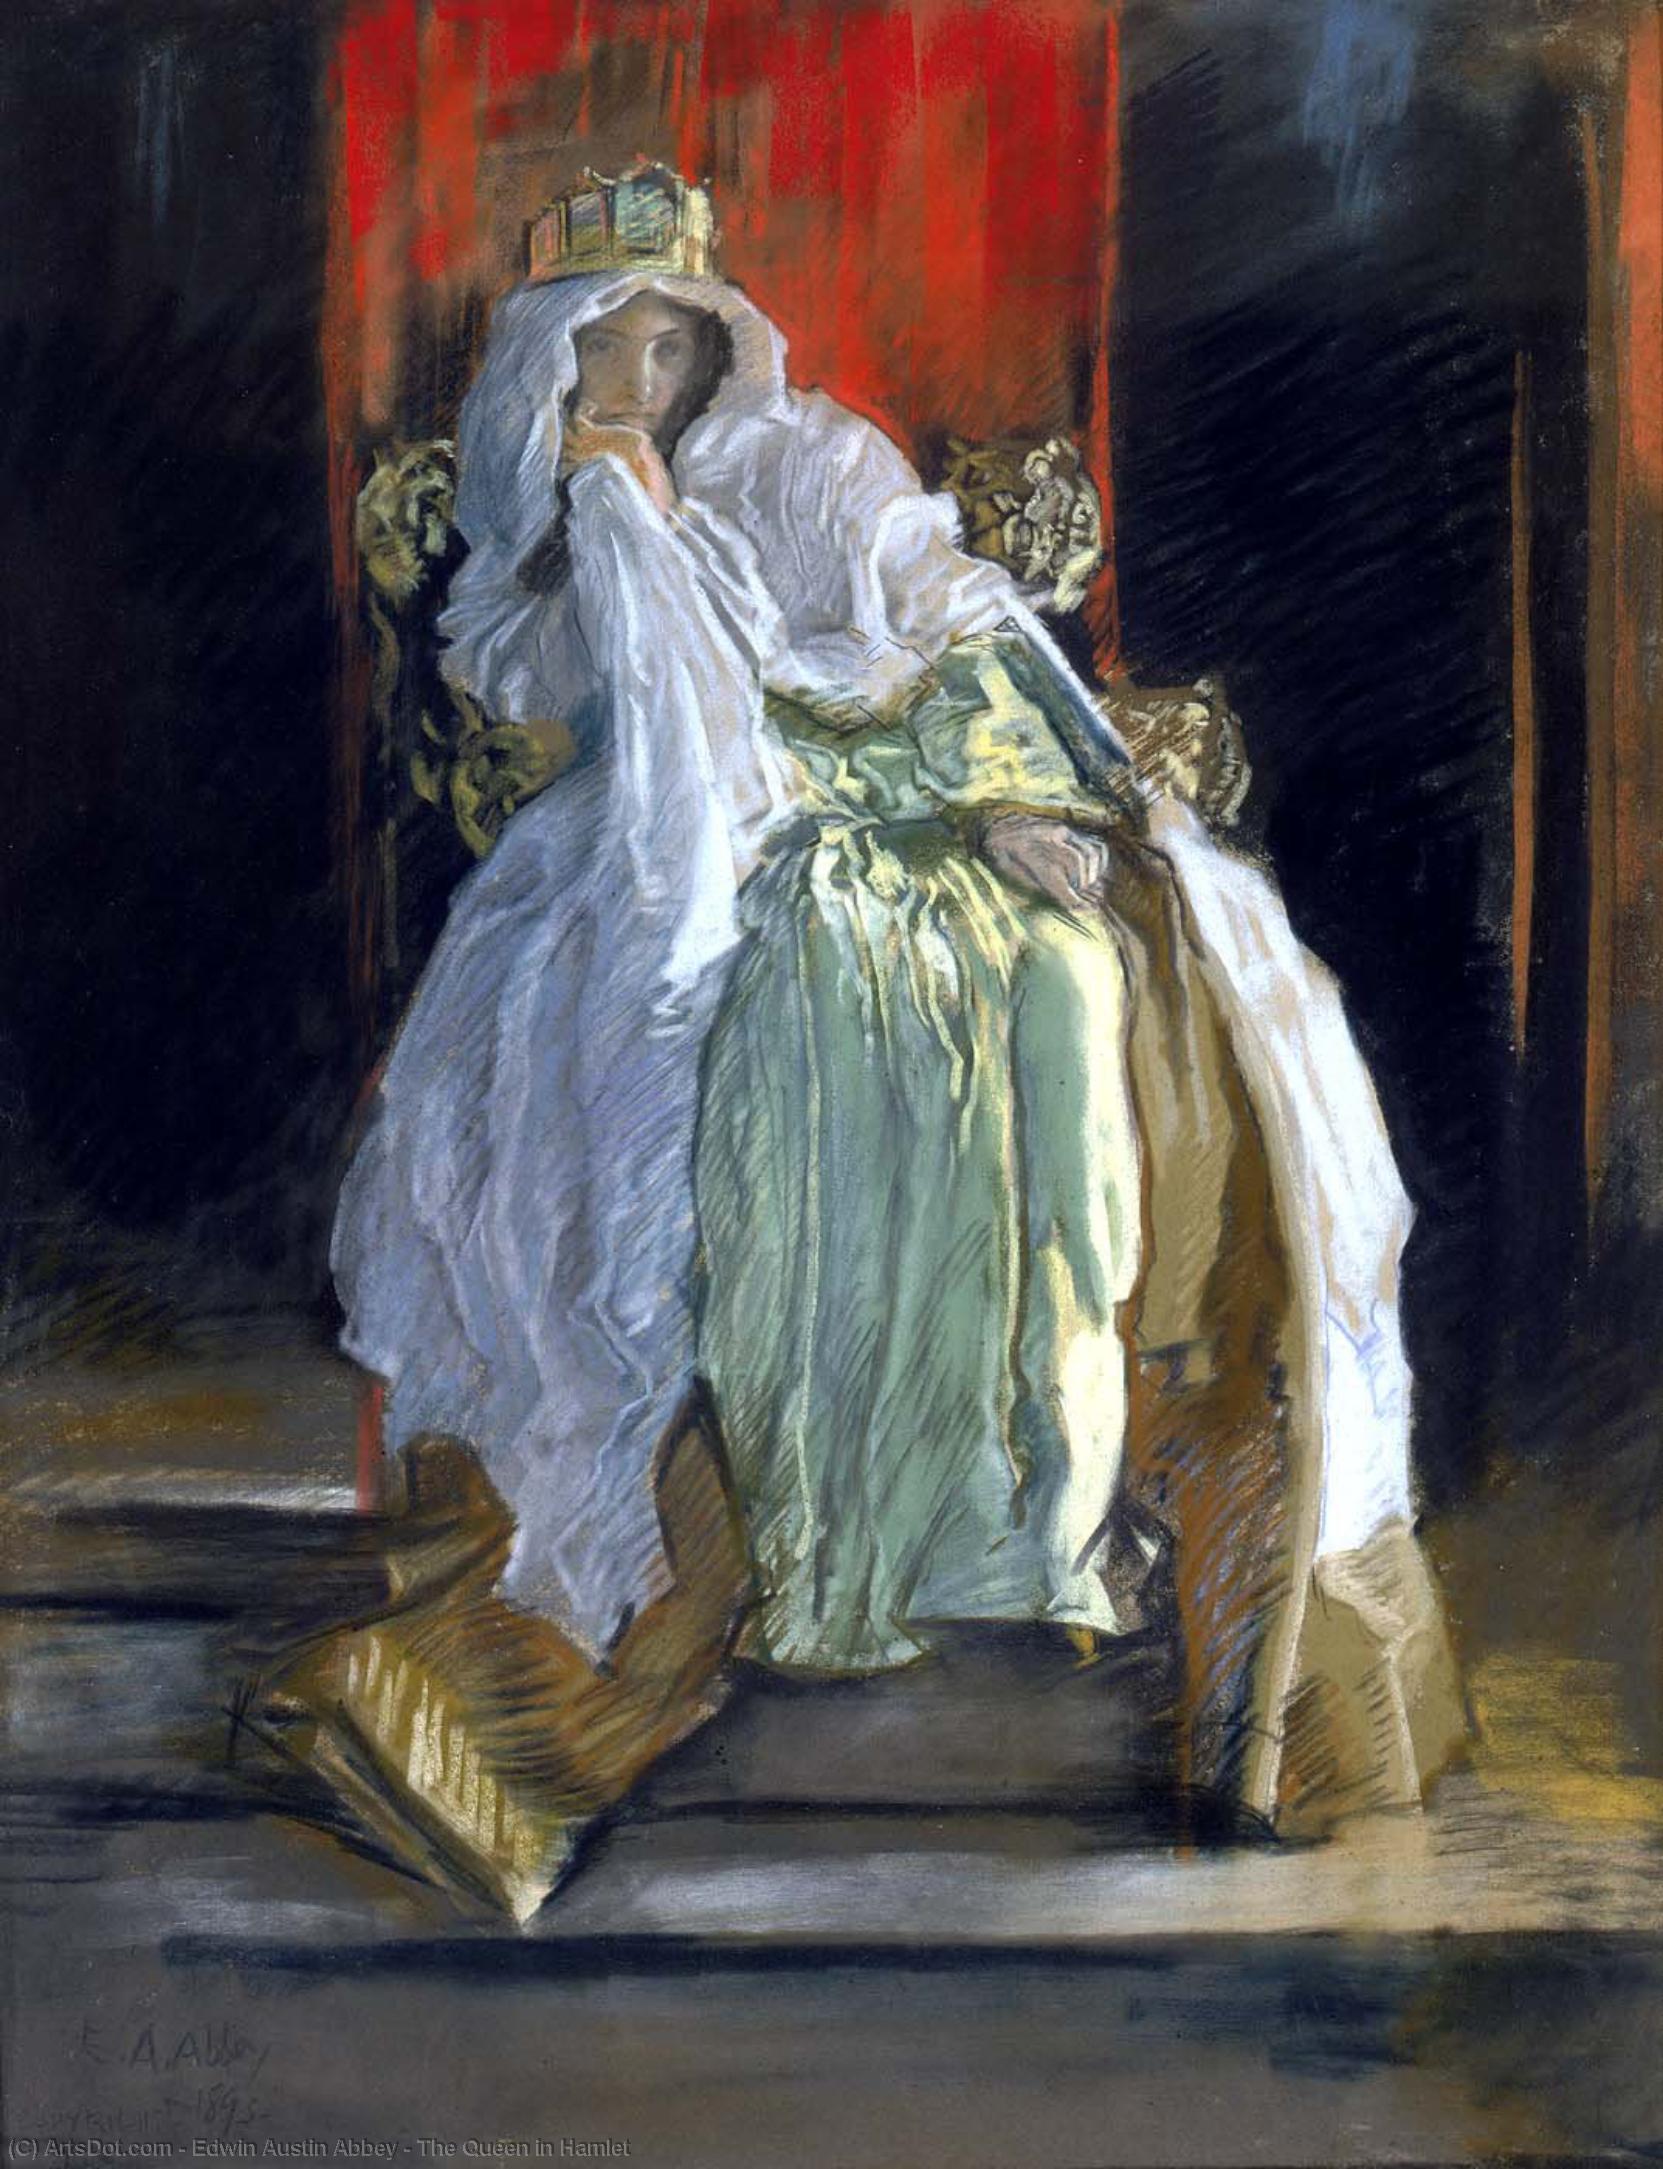 WikiOO.org - Encyclopedia of Fine Arts - Lukisan, Artwork Edwin Austin Abbey - The Queen in Hamlet